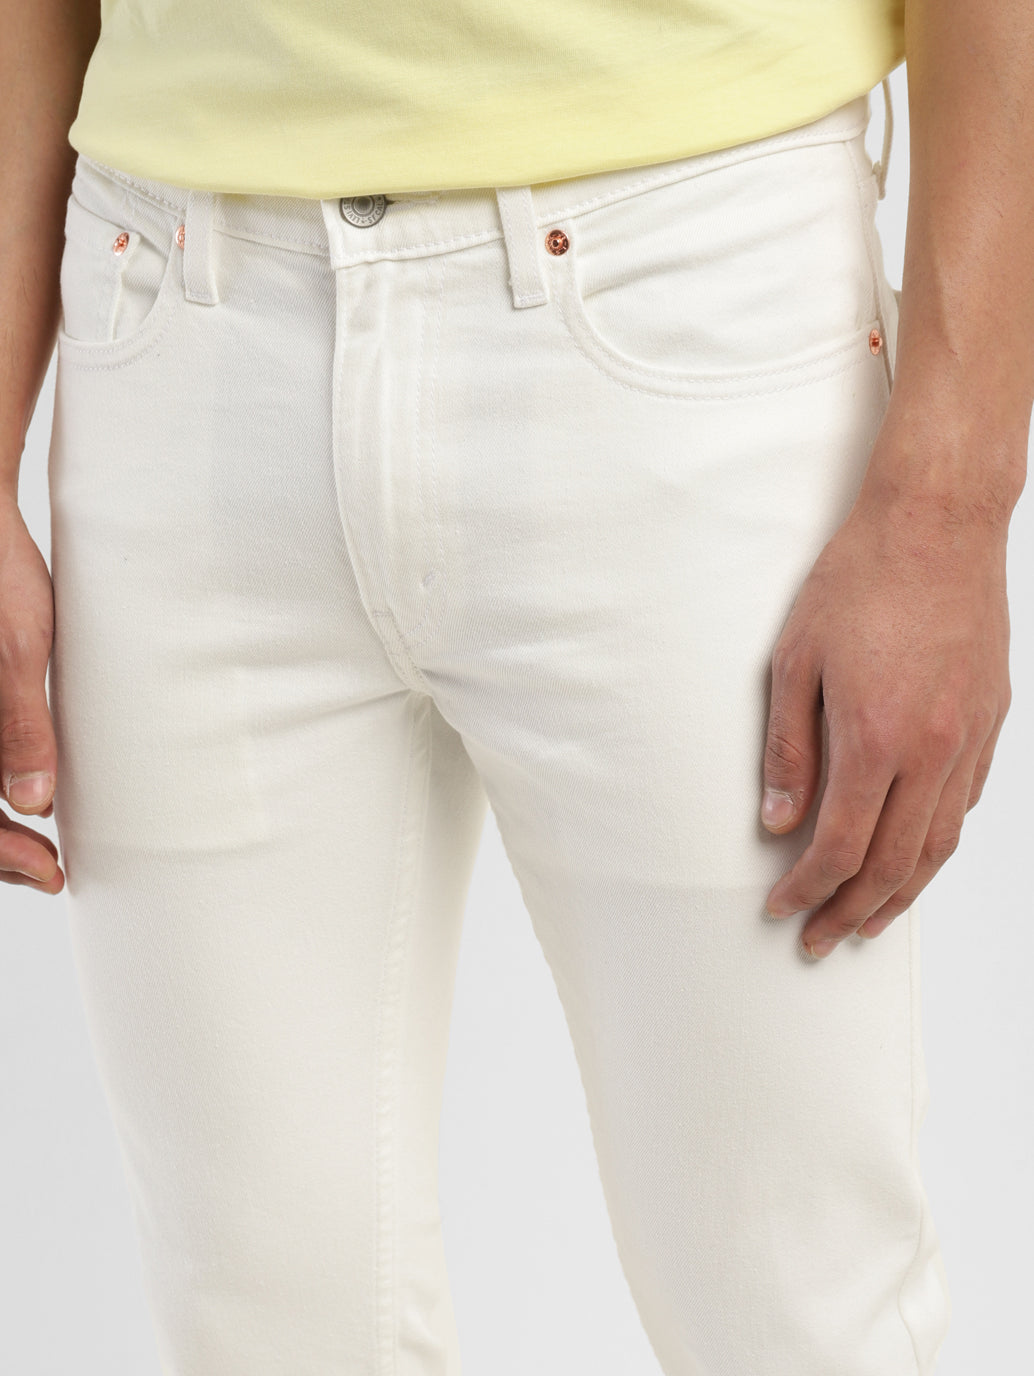 Men's White Skinny Tapered Jeans